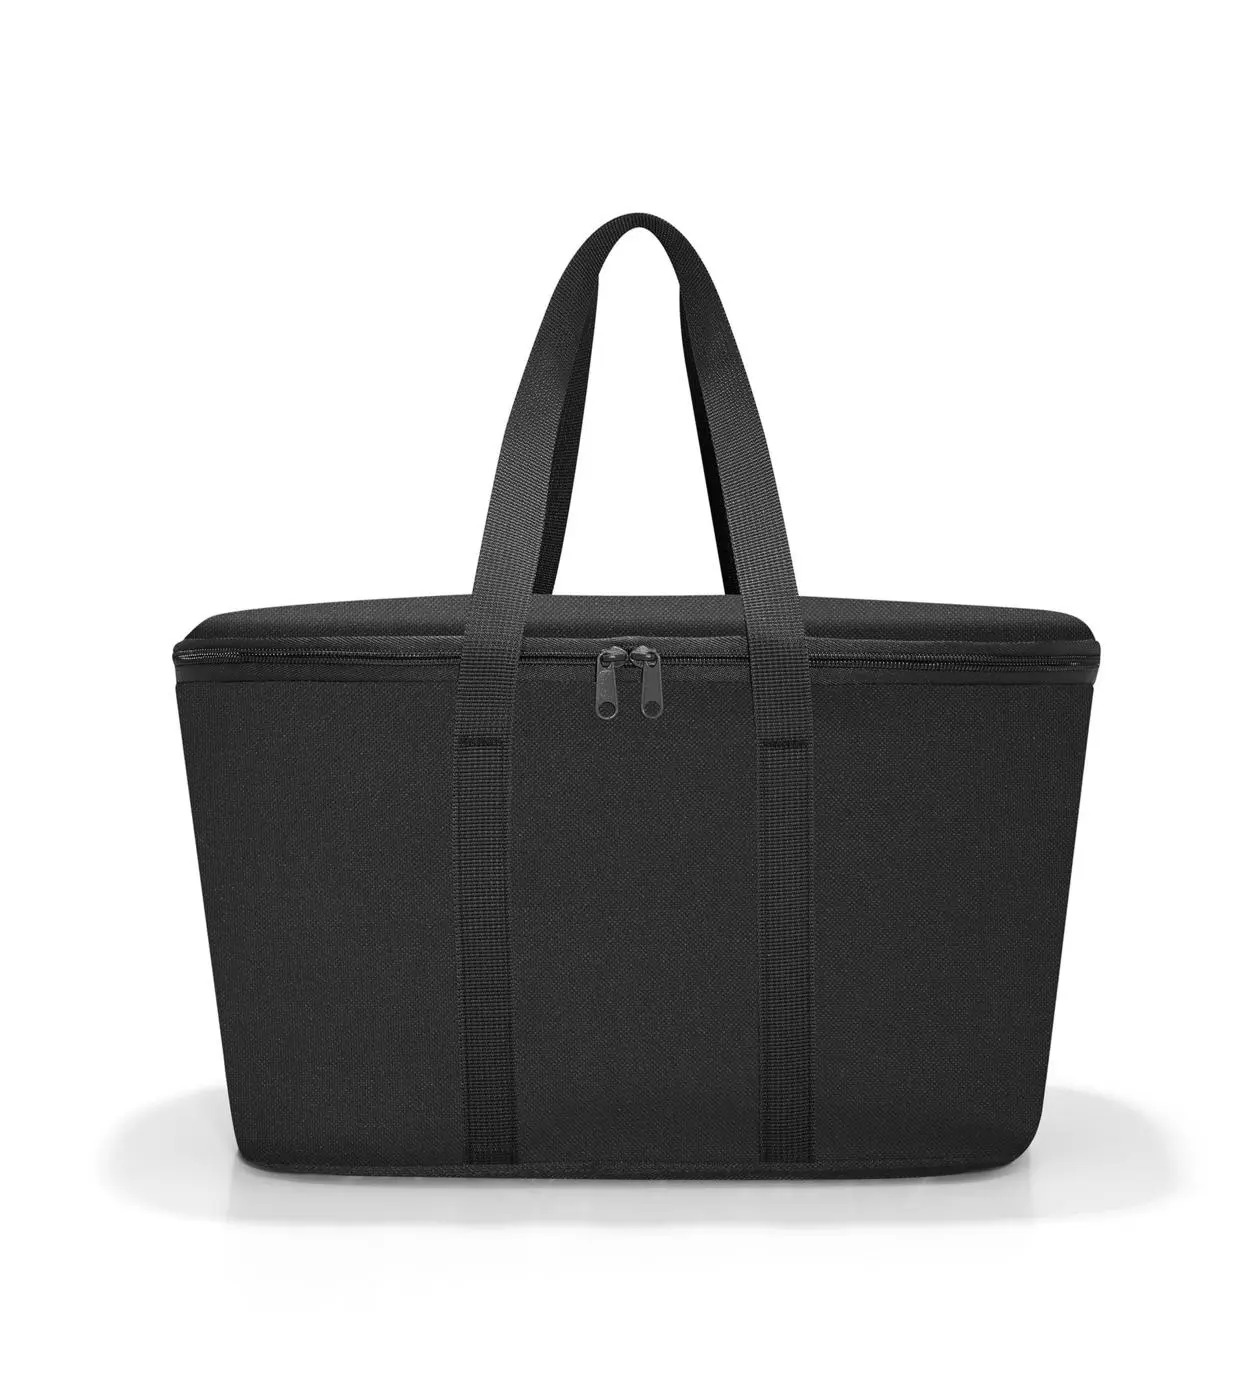 Reisenthel Coolerbag in Farbe black